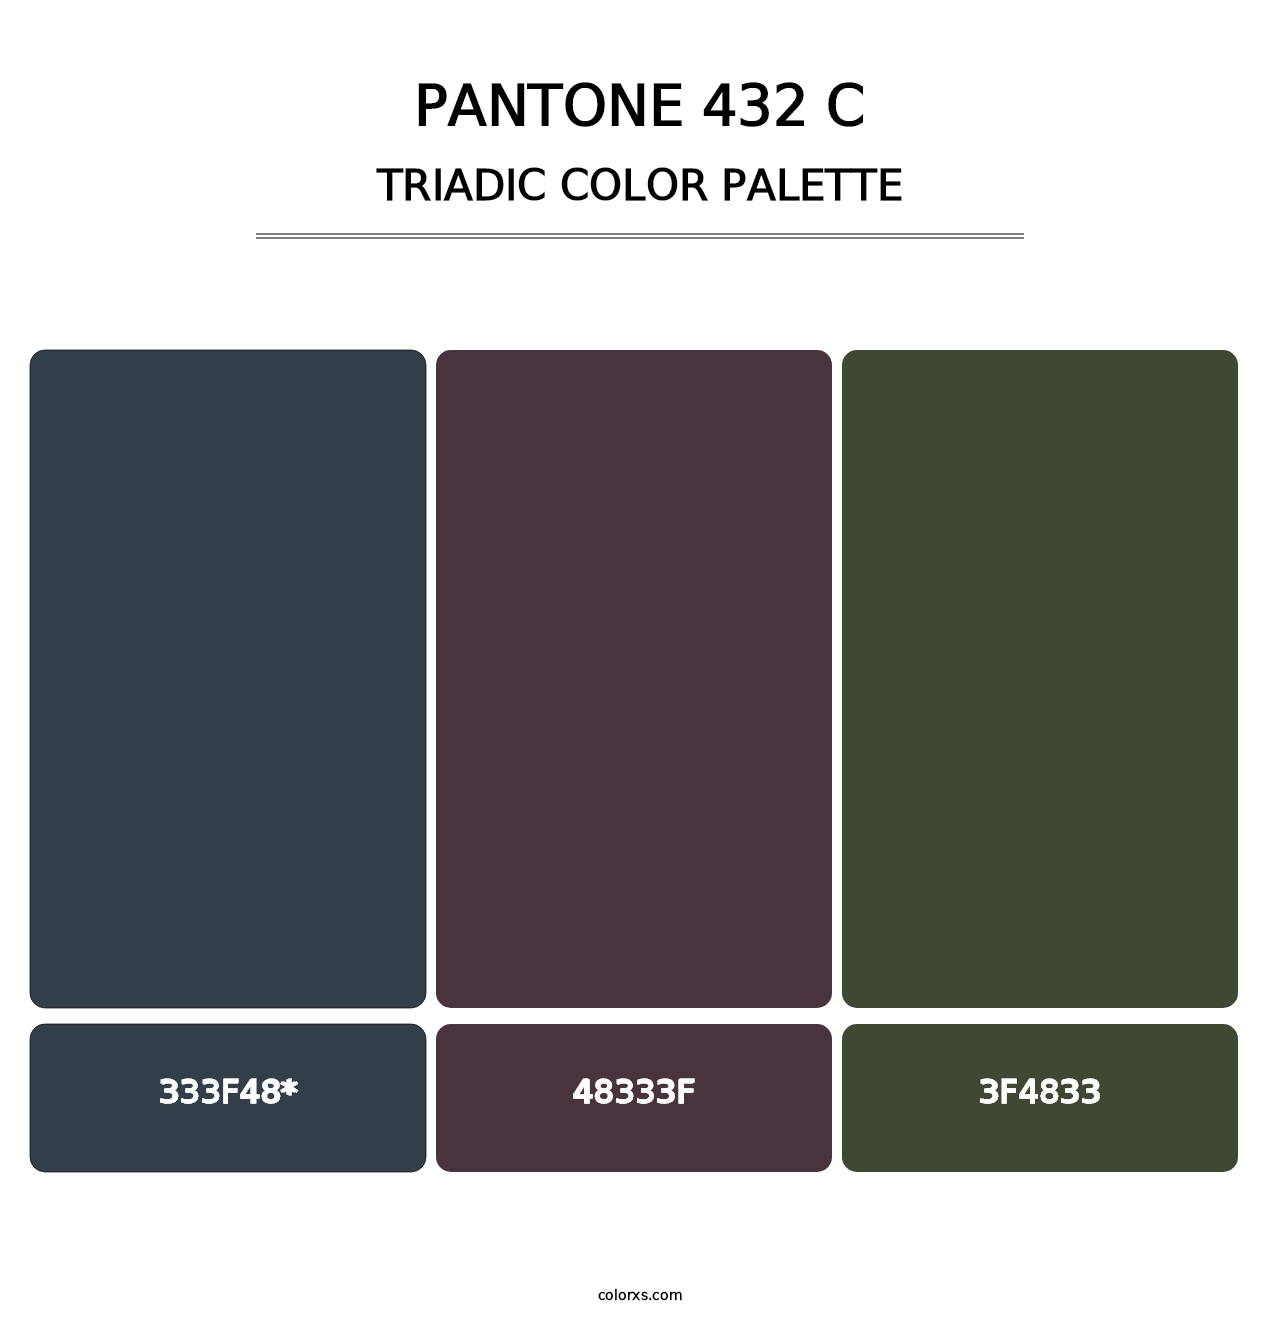 PANTONE 432 C - Triadic Color Palette